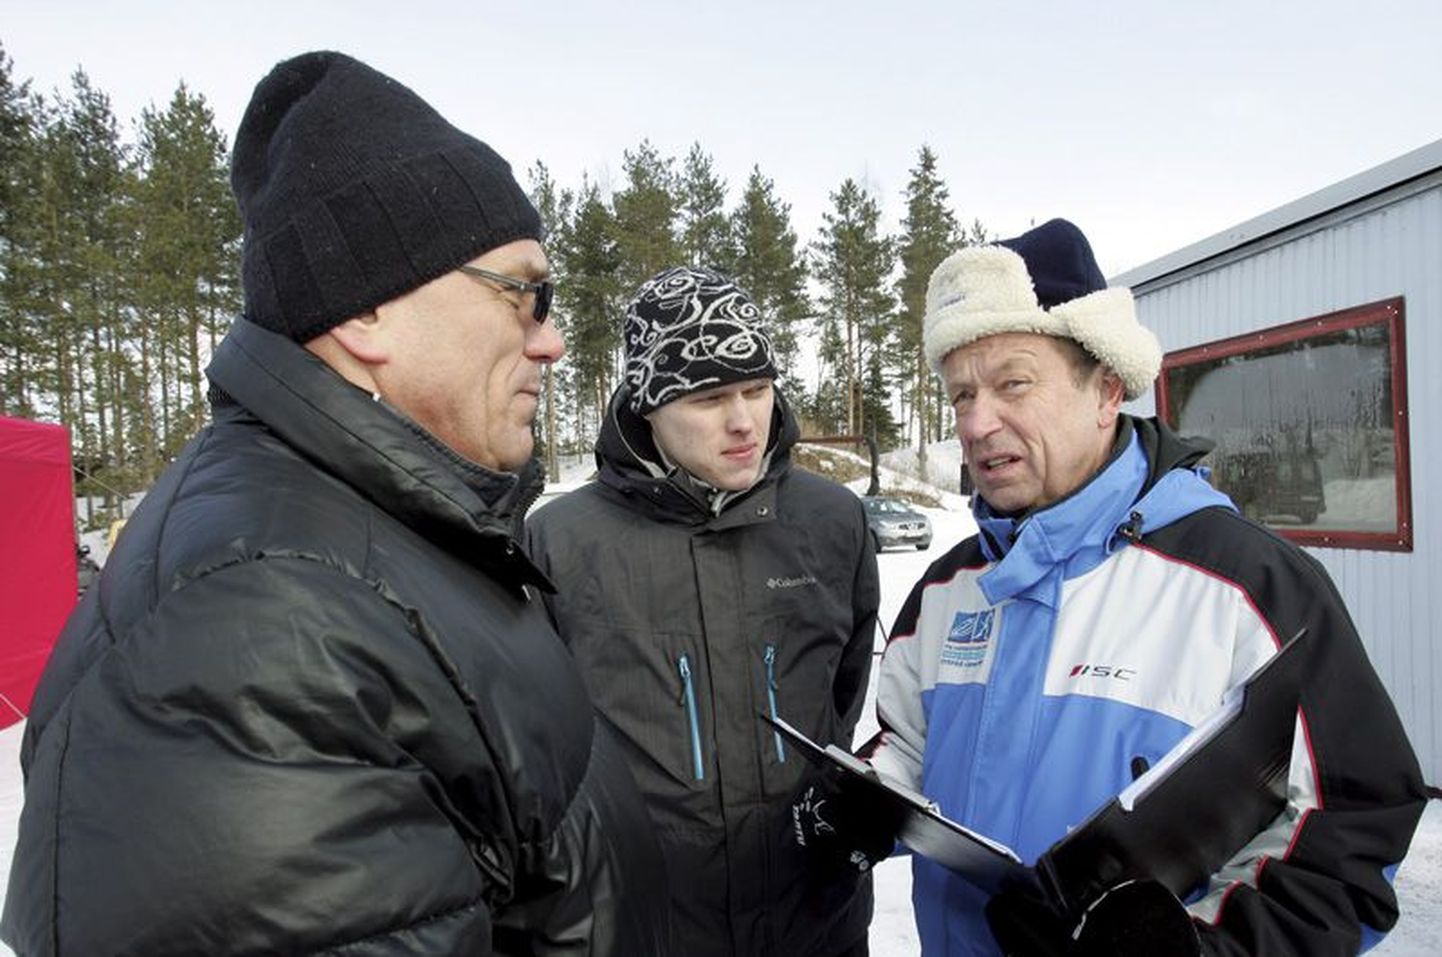 Lembitu Kuuse 2013. aastal koos oma sõbra Oleg Grossi ja rallisõitja Ott Tänakuga Kehalas.